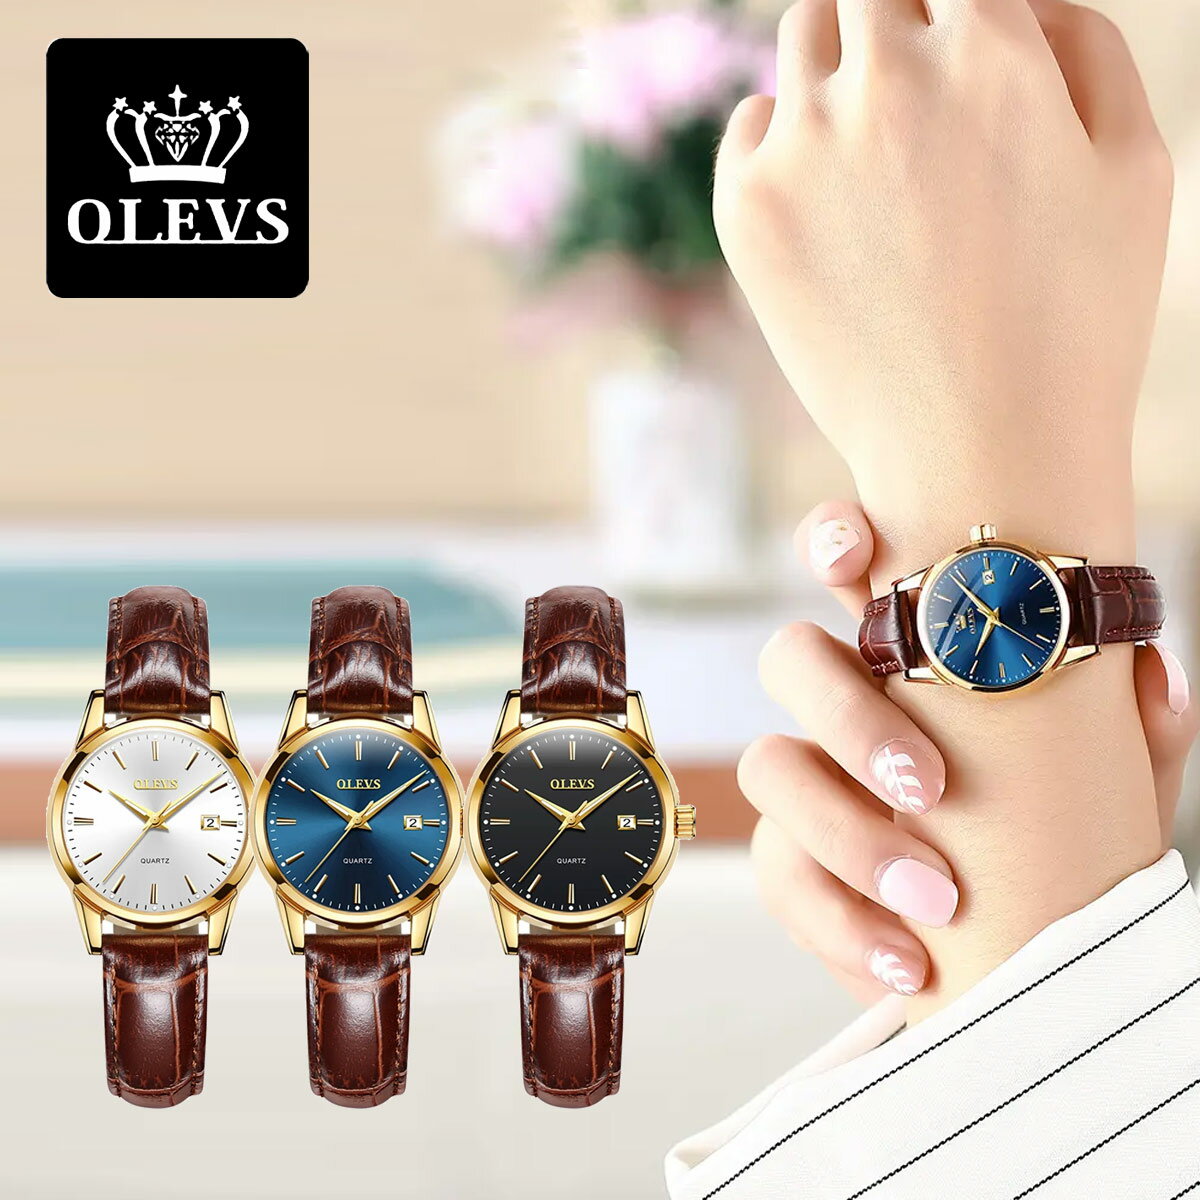 腕時計 レディース おしゃれ 安い 北欧デザイン ブランド OLEVS オレブス かわいい 日本製ムーブメント デザインウォッチ ホワイト ネイビー ブラウン ゴールド ギフト プレゼント レディース…